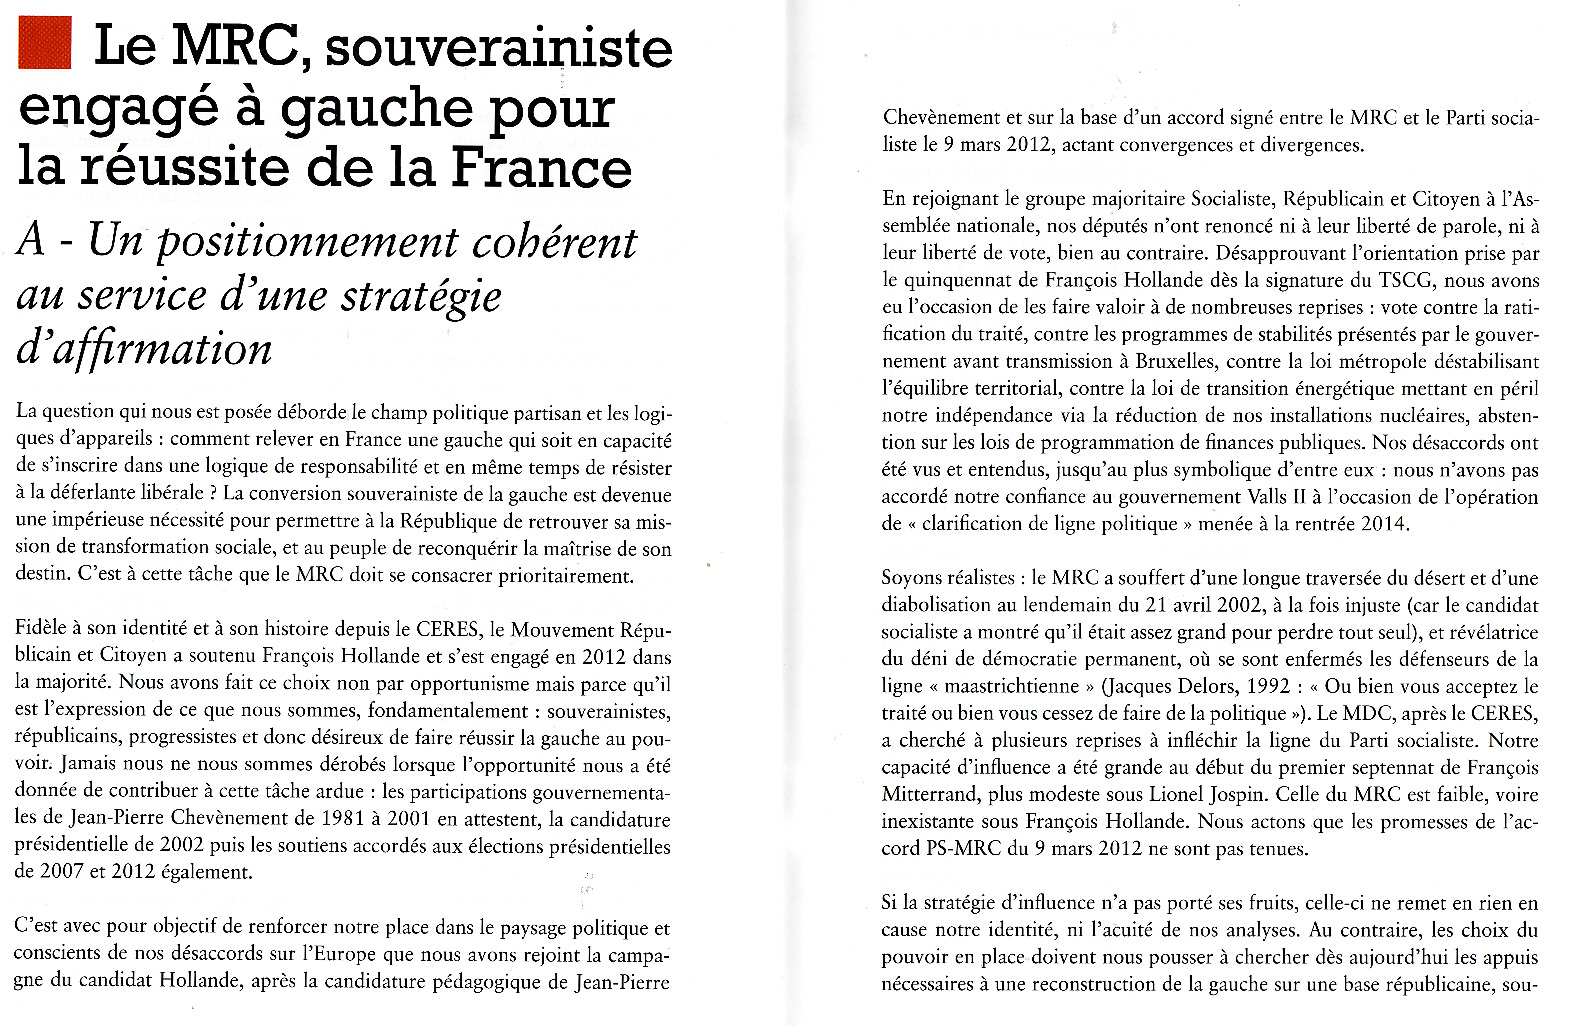 Le MRC, souverainiste de gauche pour la réussite de la France